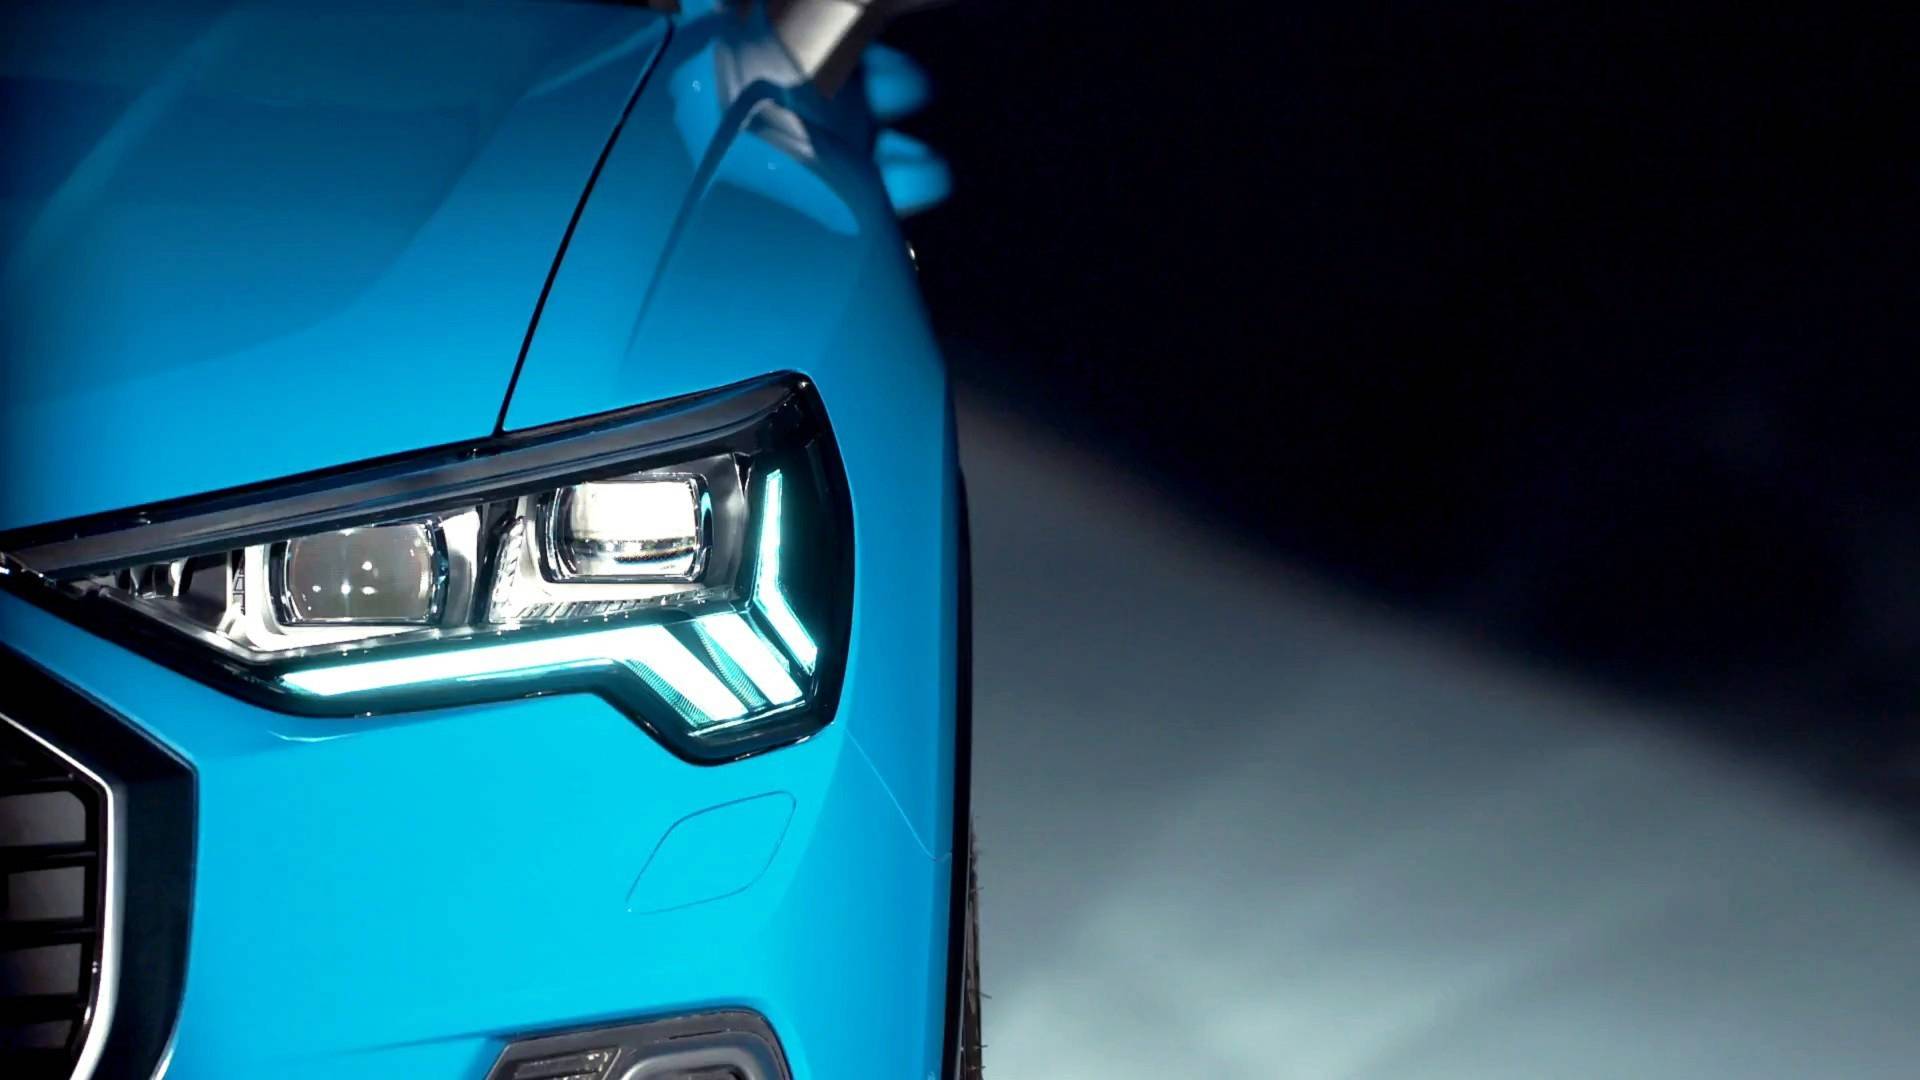 Audi Headlights Hd Wallpaper